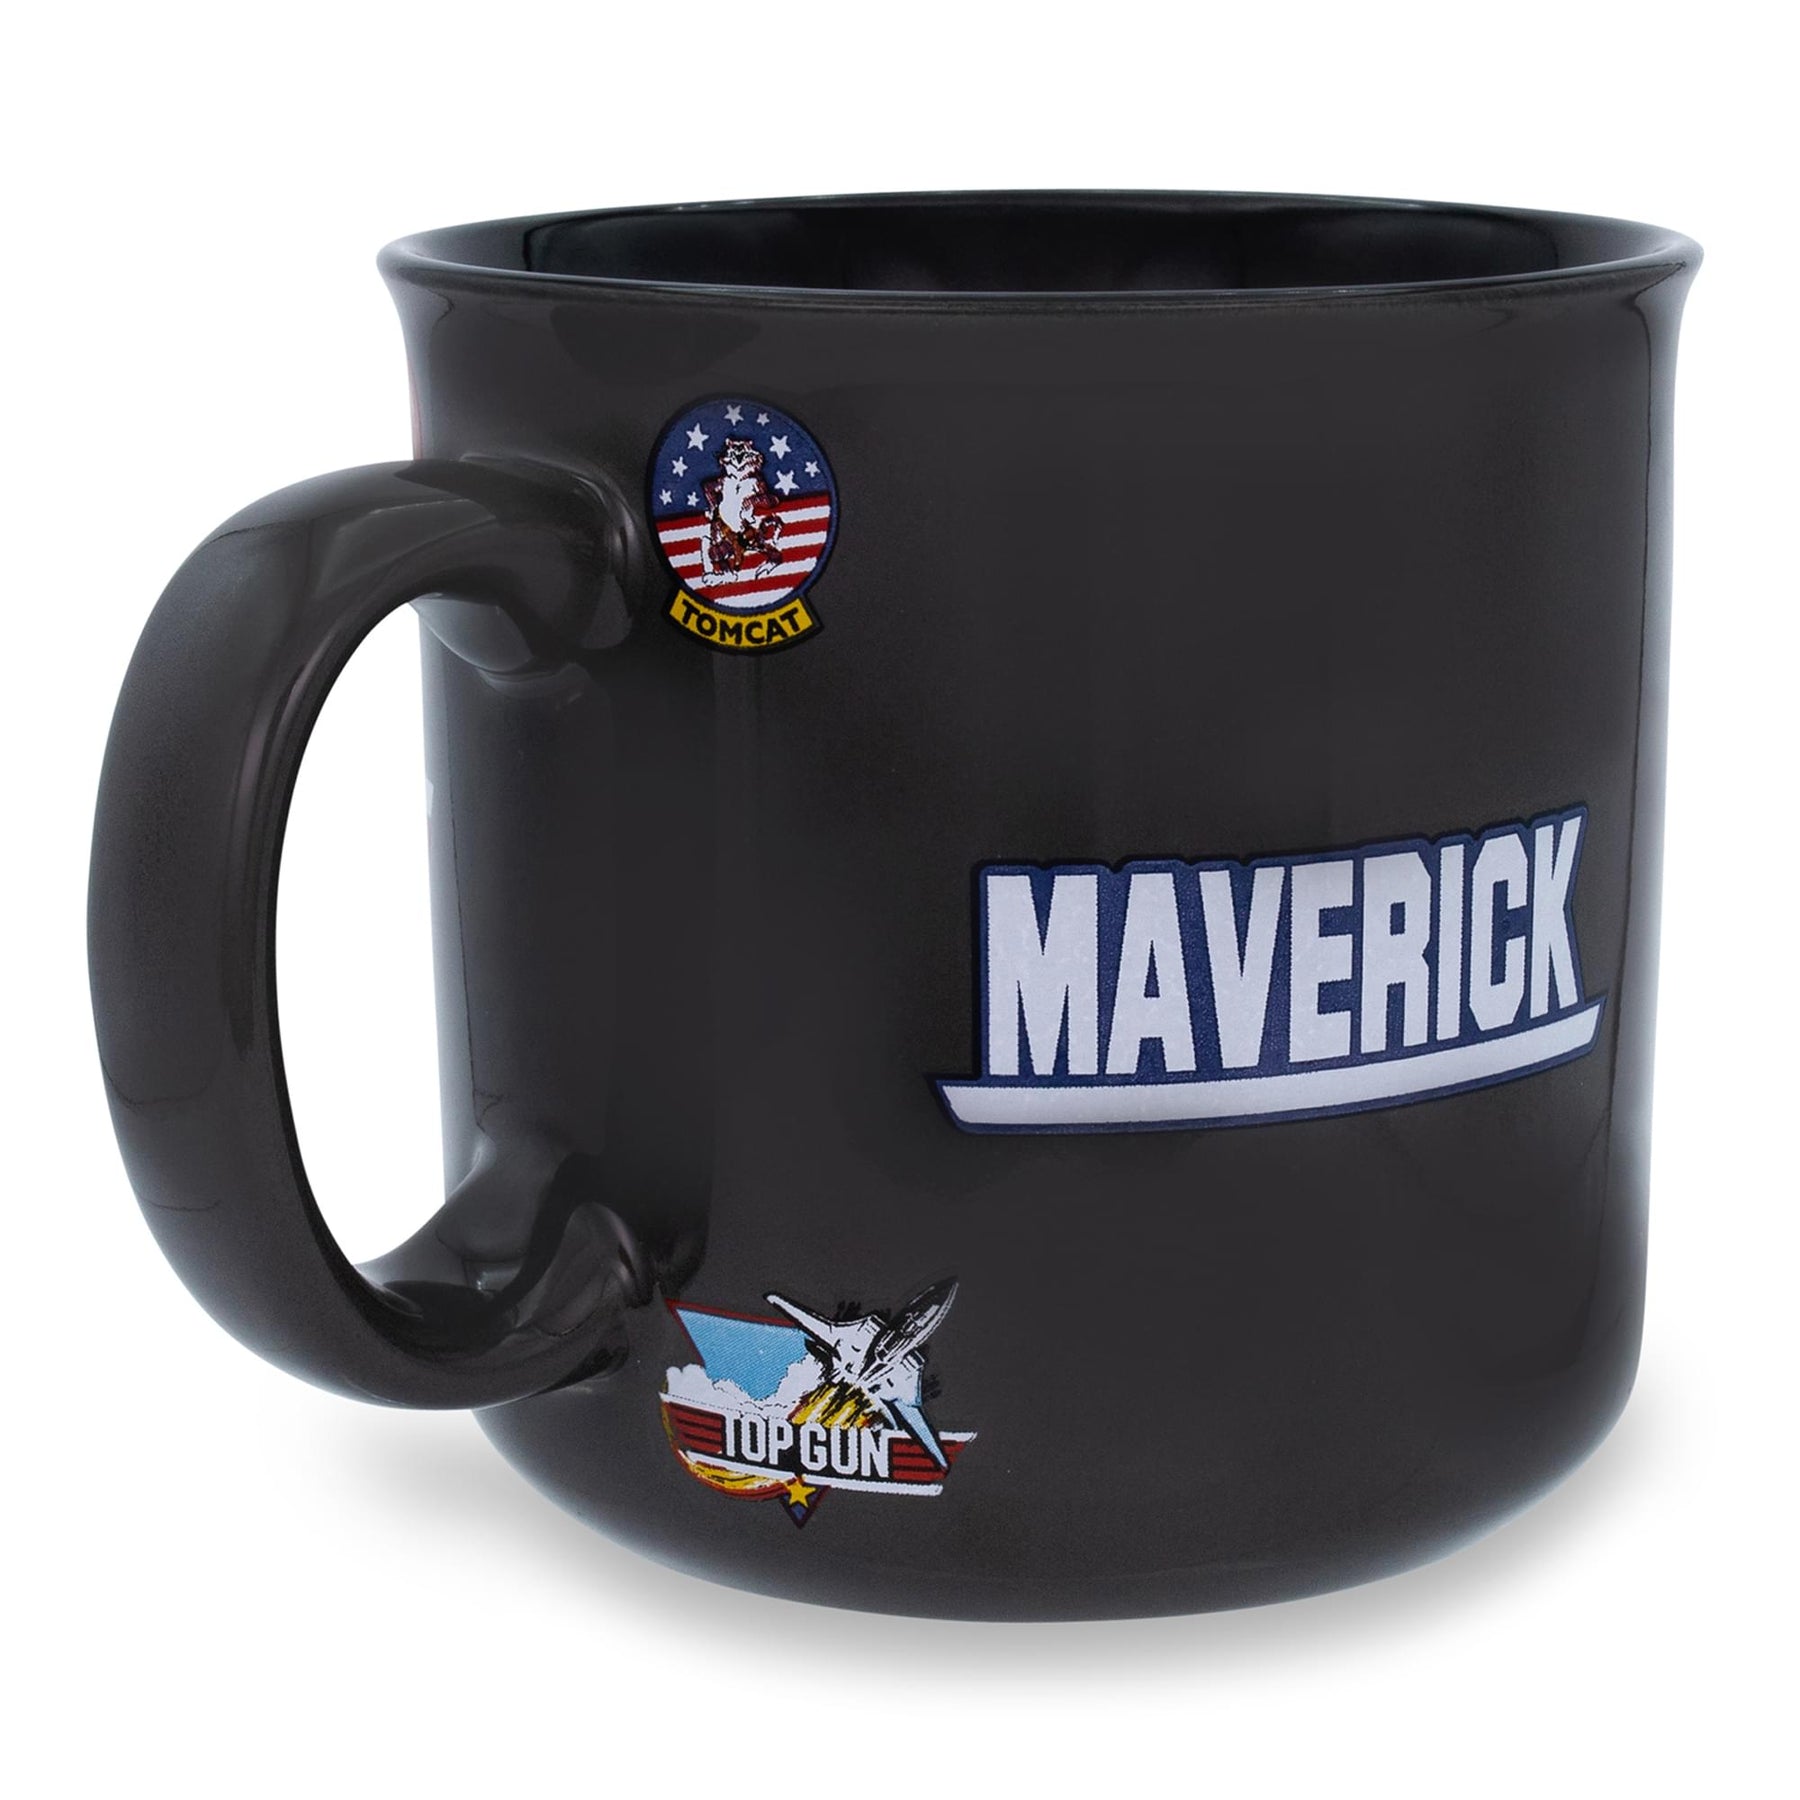 MuzeMerch - Top Gun Need For Speed USS Midway Mug